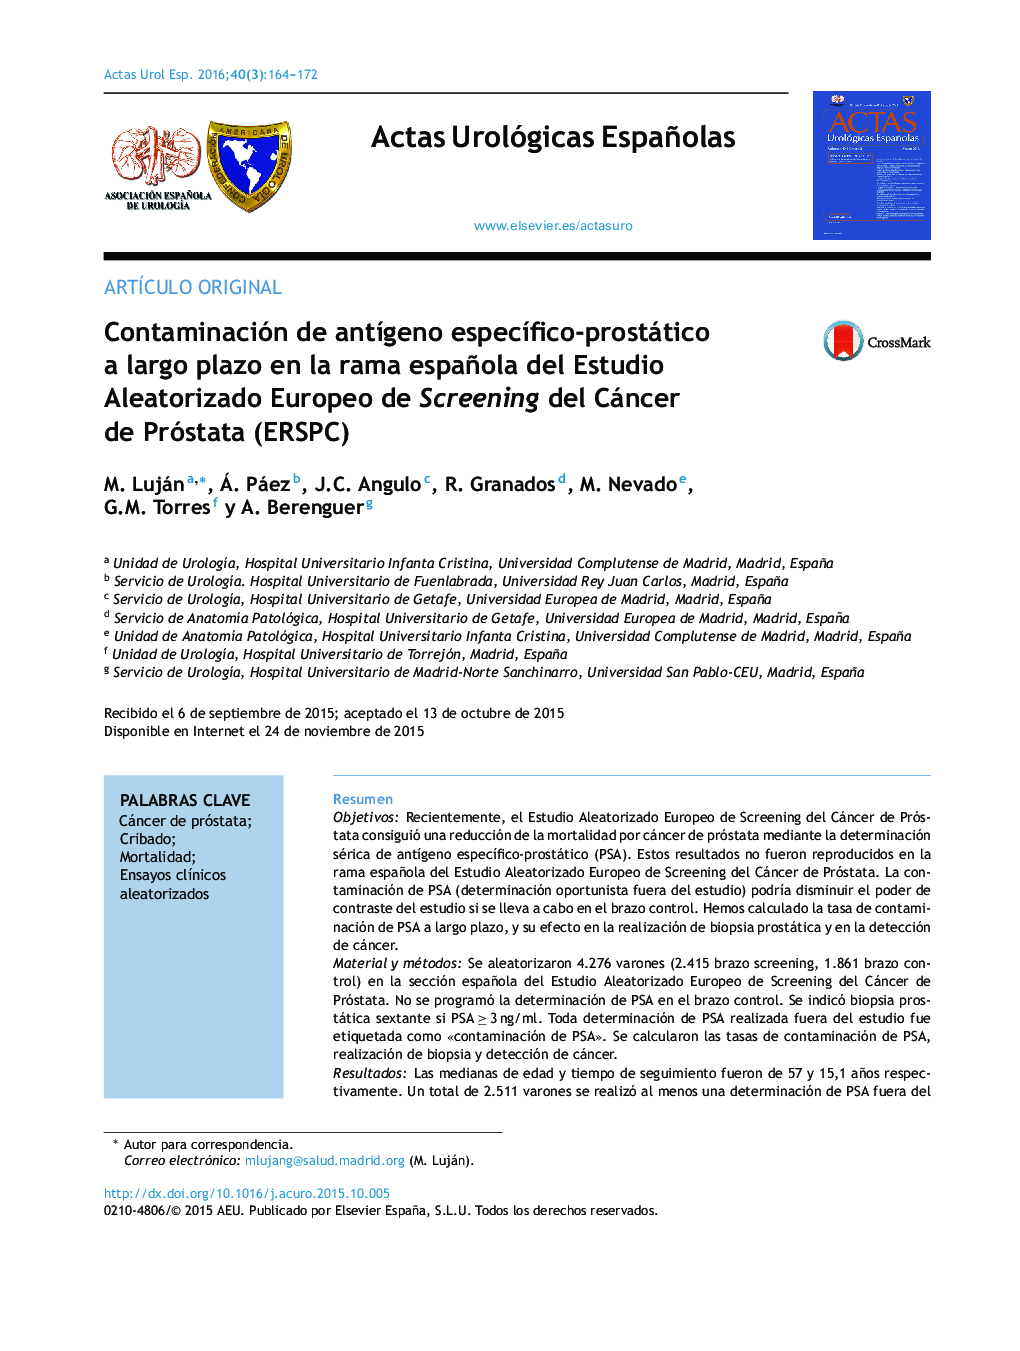 Contaminación de antÃ­geno especÃ­fico-prostático a largo plazo en la rama española del Estudio Aleatorizado Europeo de Screening del Cáncer de Próstata (ERSPC)